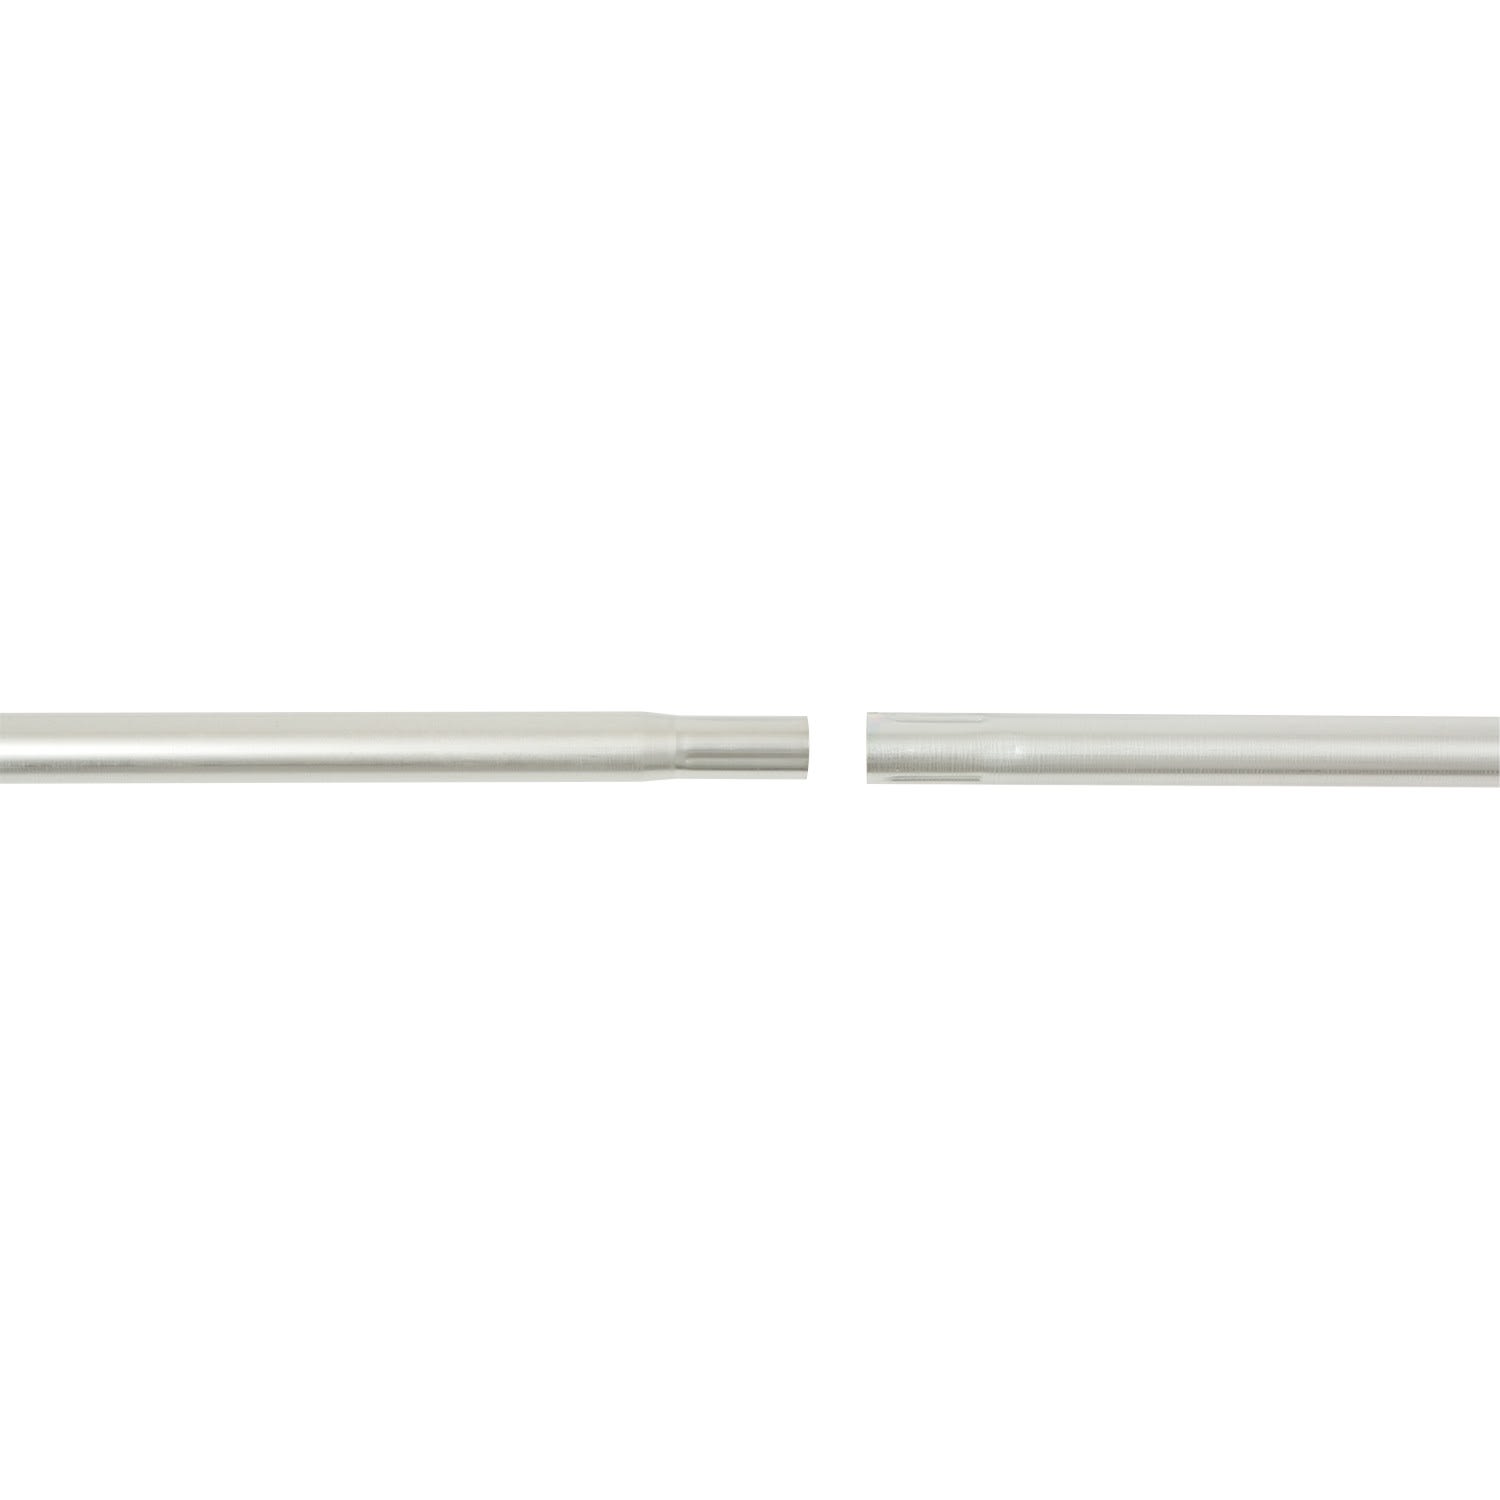 Erard - Tronçon acier emboîtable de 2 mètres Ø 40 mm x 1,2 mm. Galvanisé